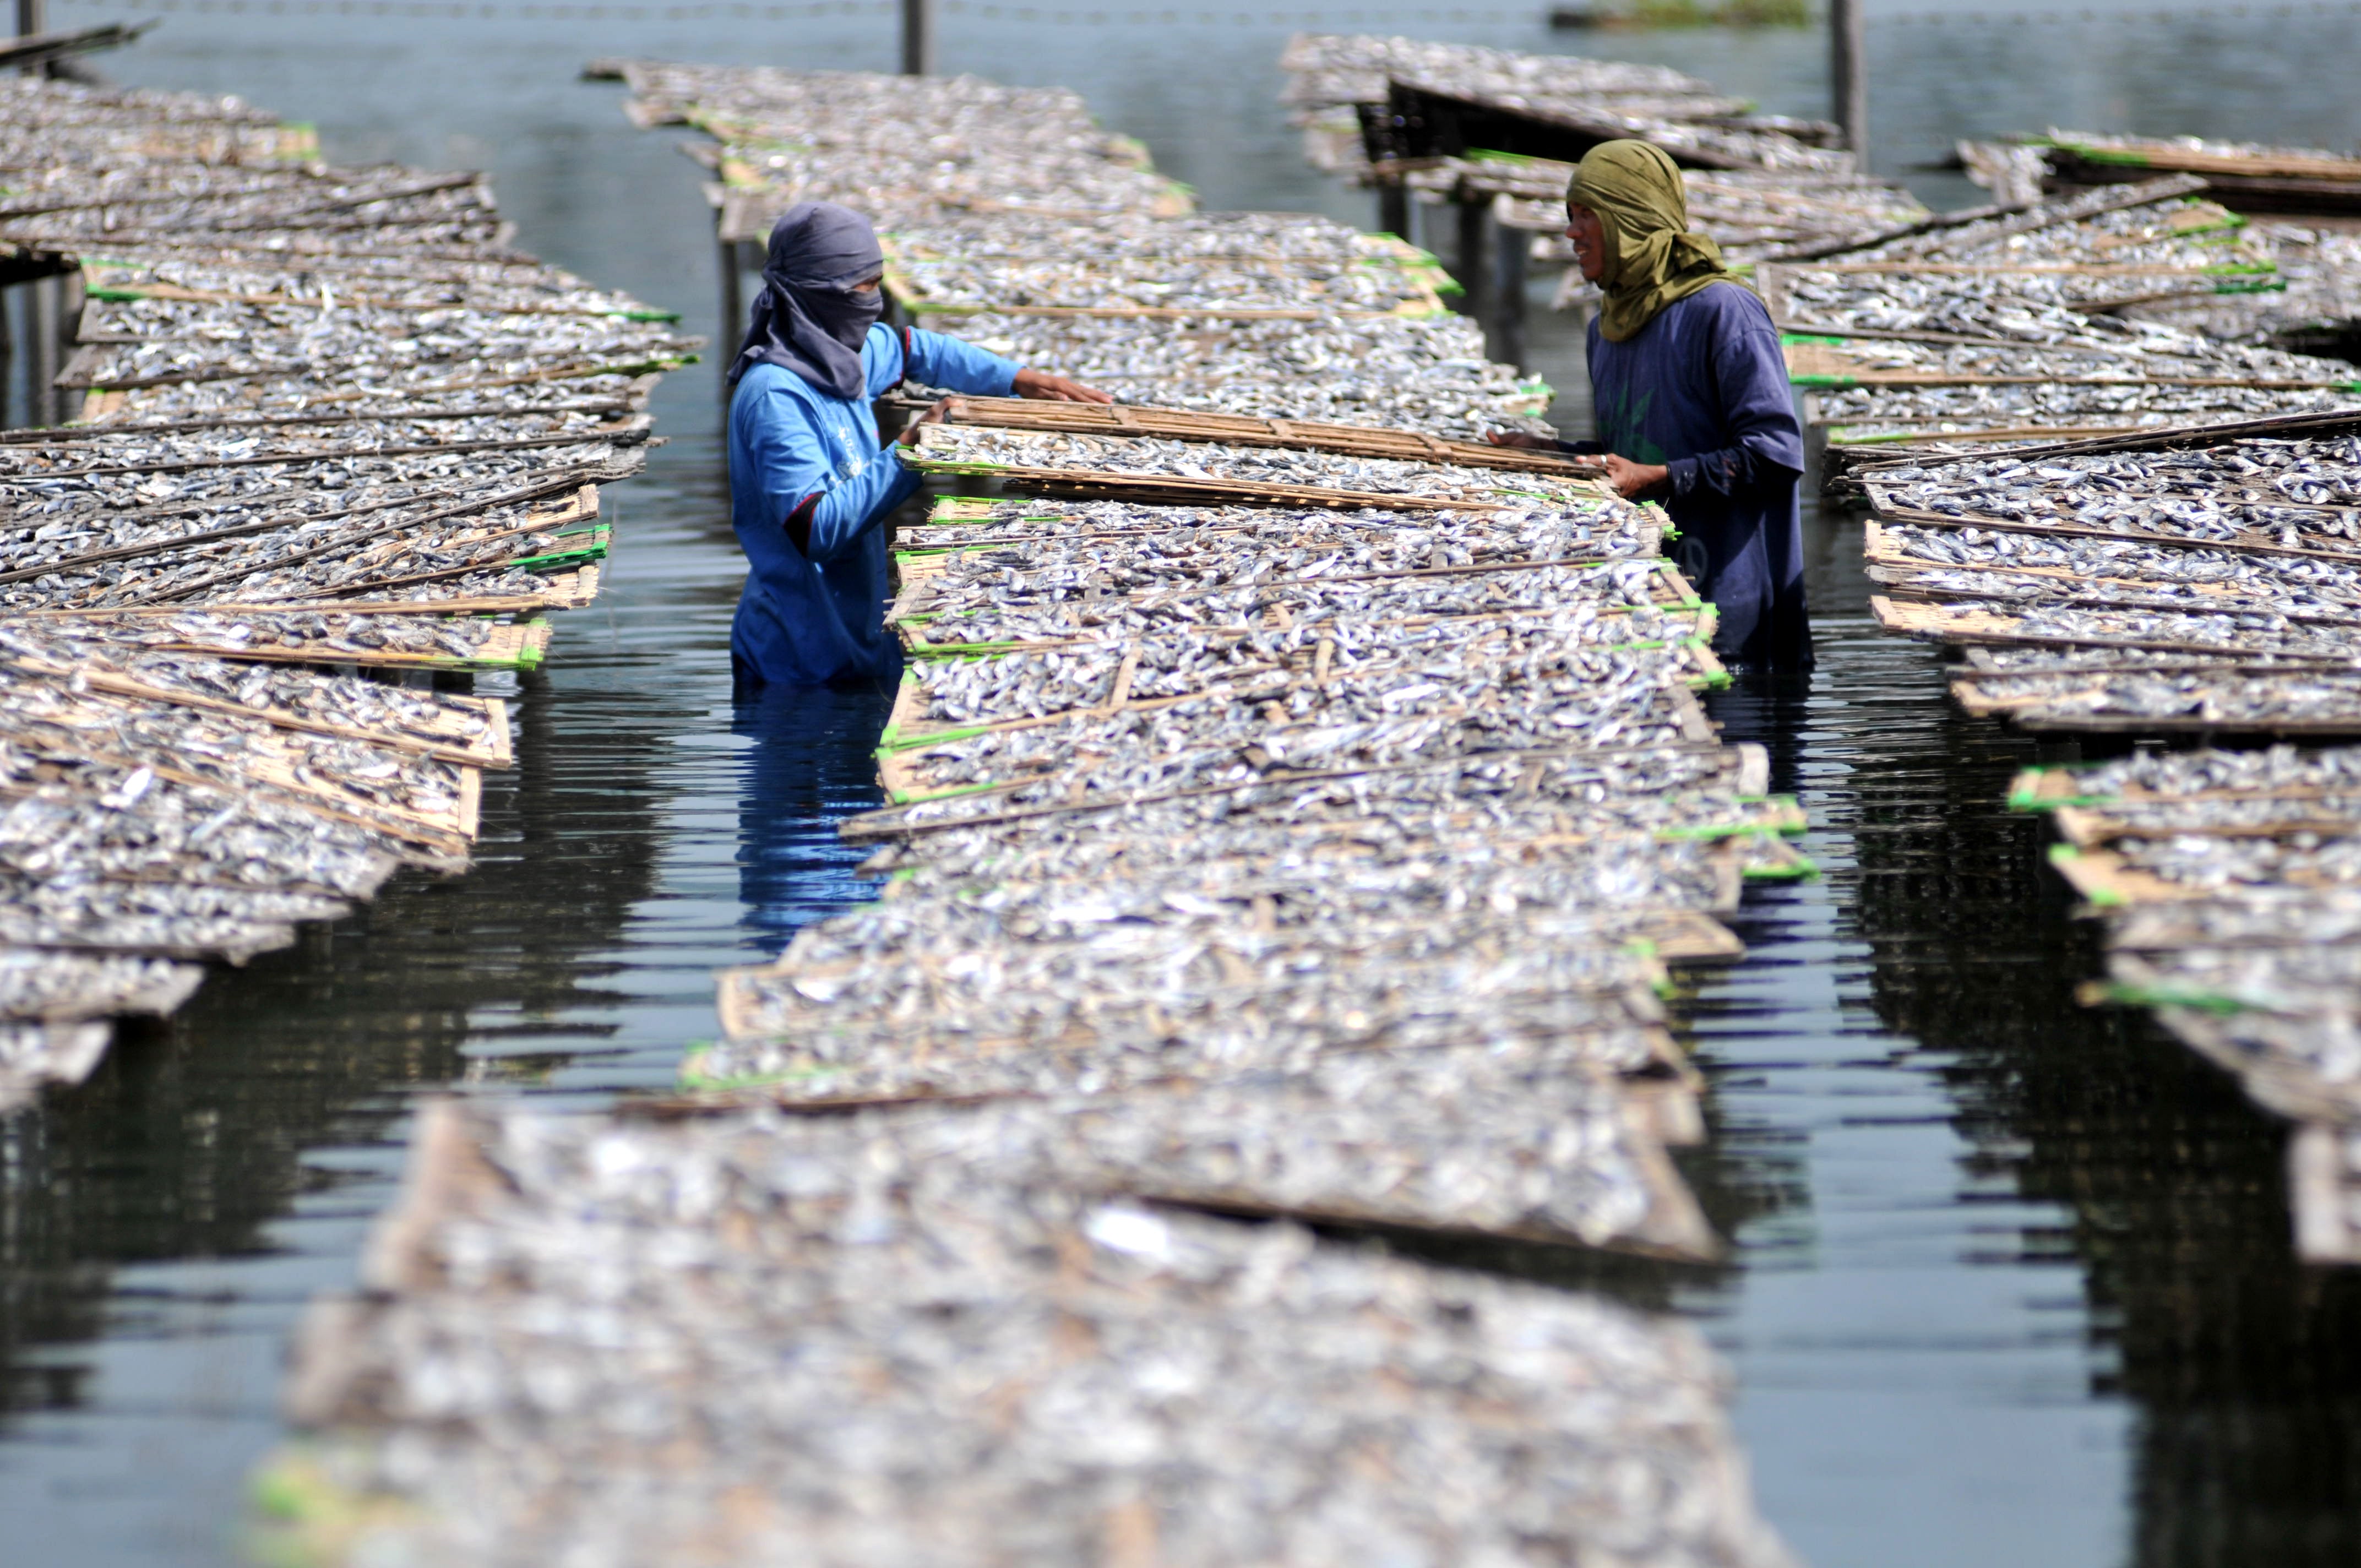 Fishermen processing fish.